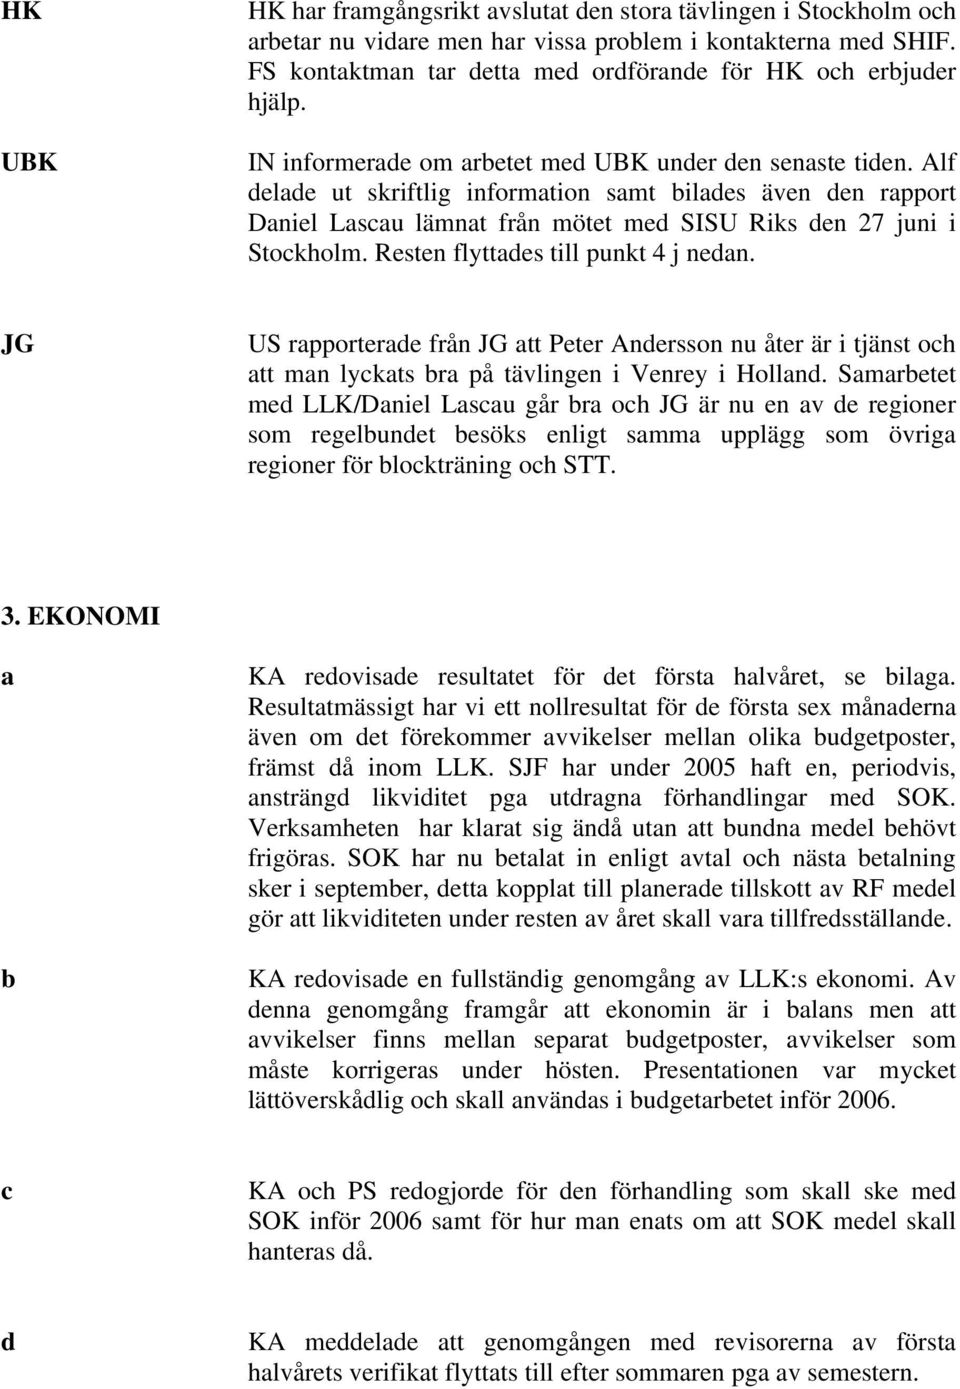 Alf delade ut skriftlig information samt bilades även den rapport Daniel Lascau lämnat från mötet med SISU Riks den 27 juni i Stockholm. Resten flyttades till punkt 4 j nedan.